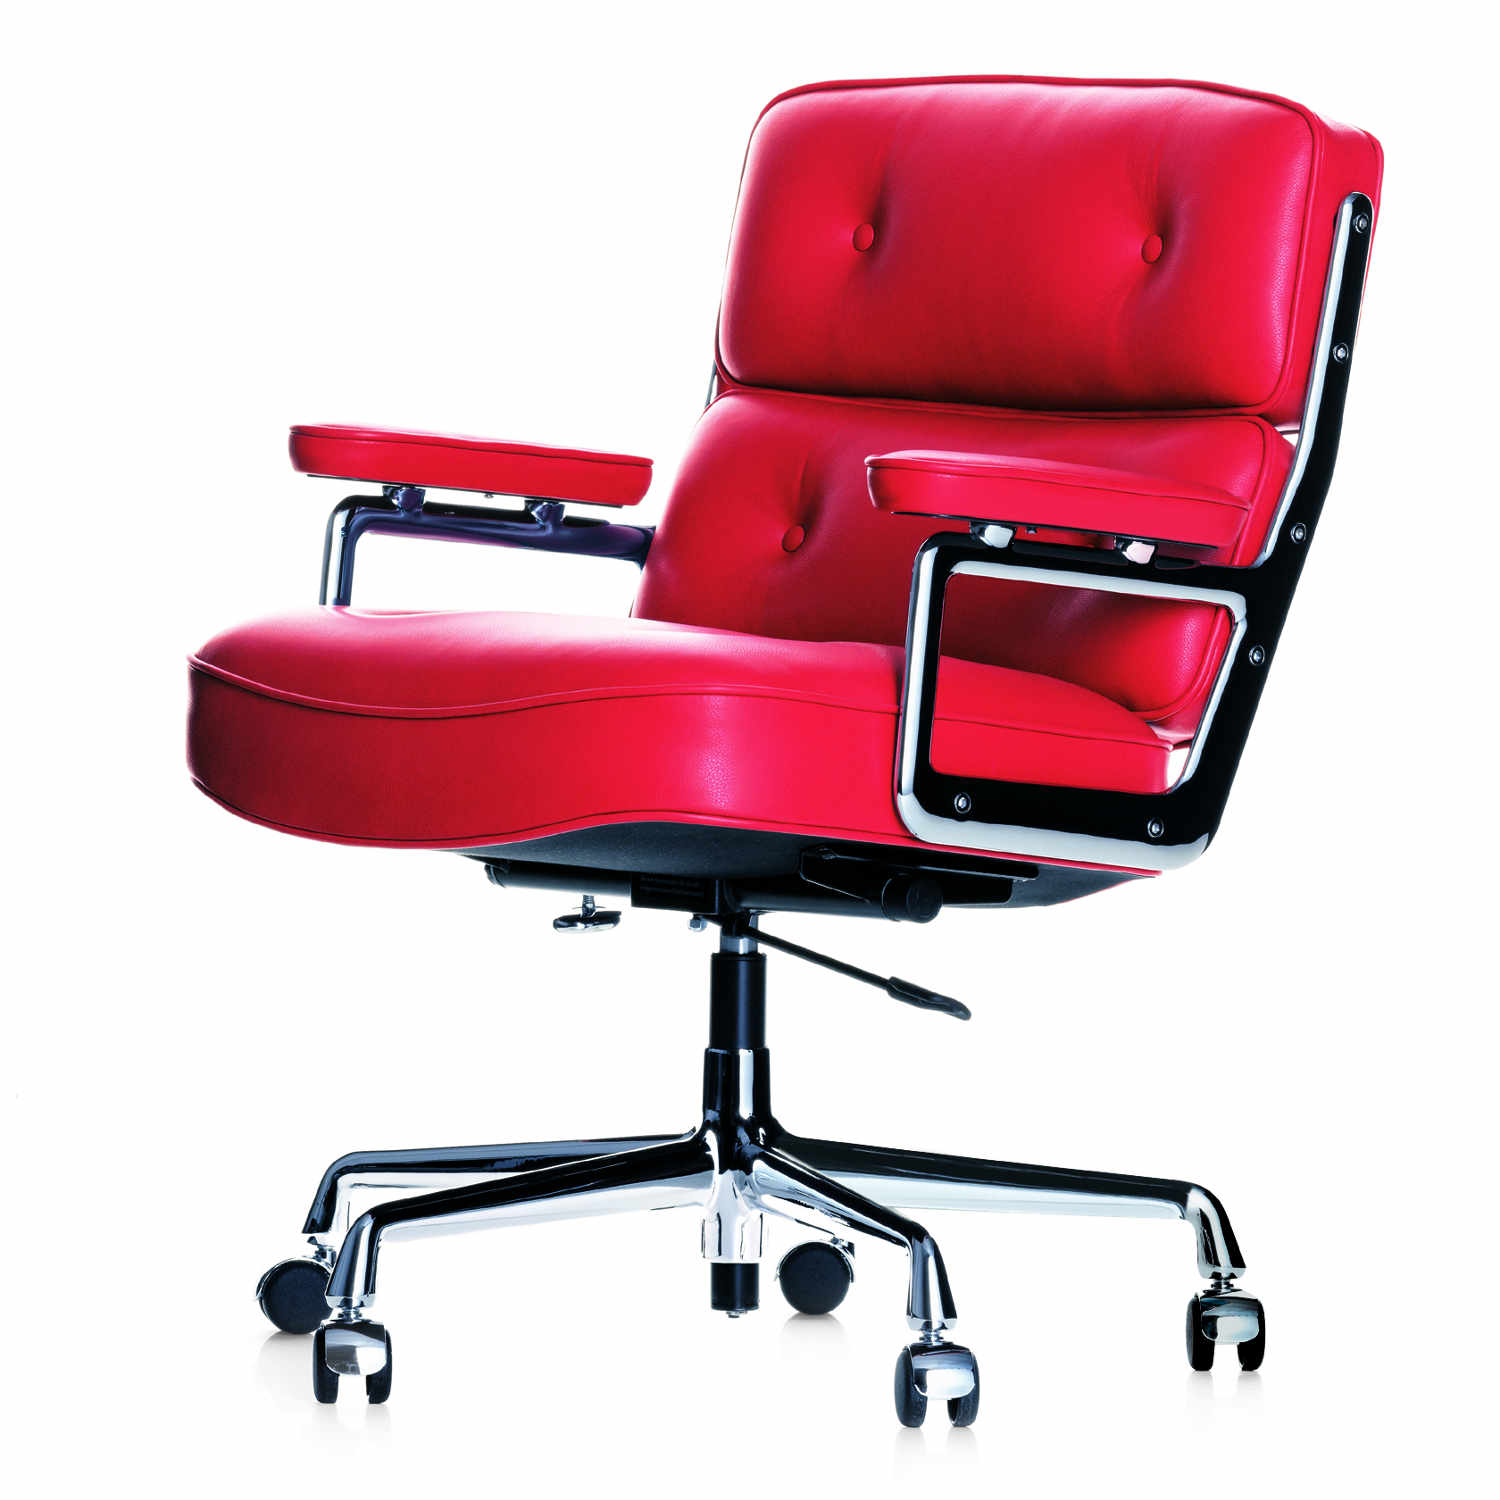 Lobby Chair ES104 Bürodrehstuhl, Lederbezug l20 dimgrey, Rollen rolle hart gebremst für teppichboden von Vitra